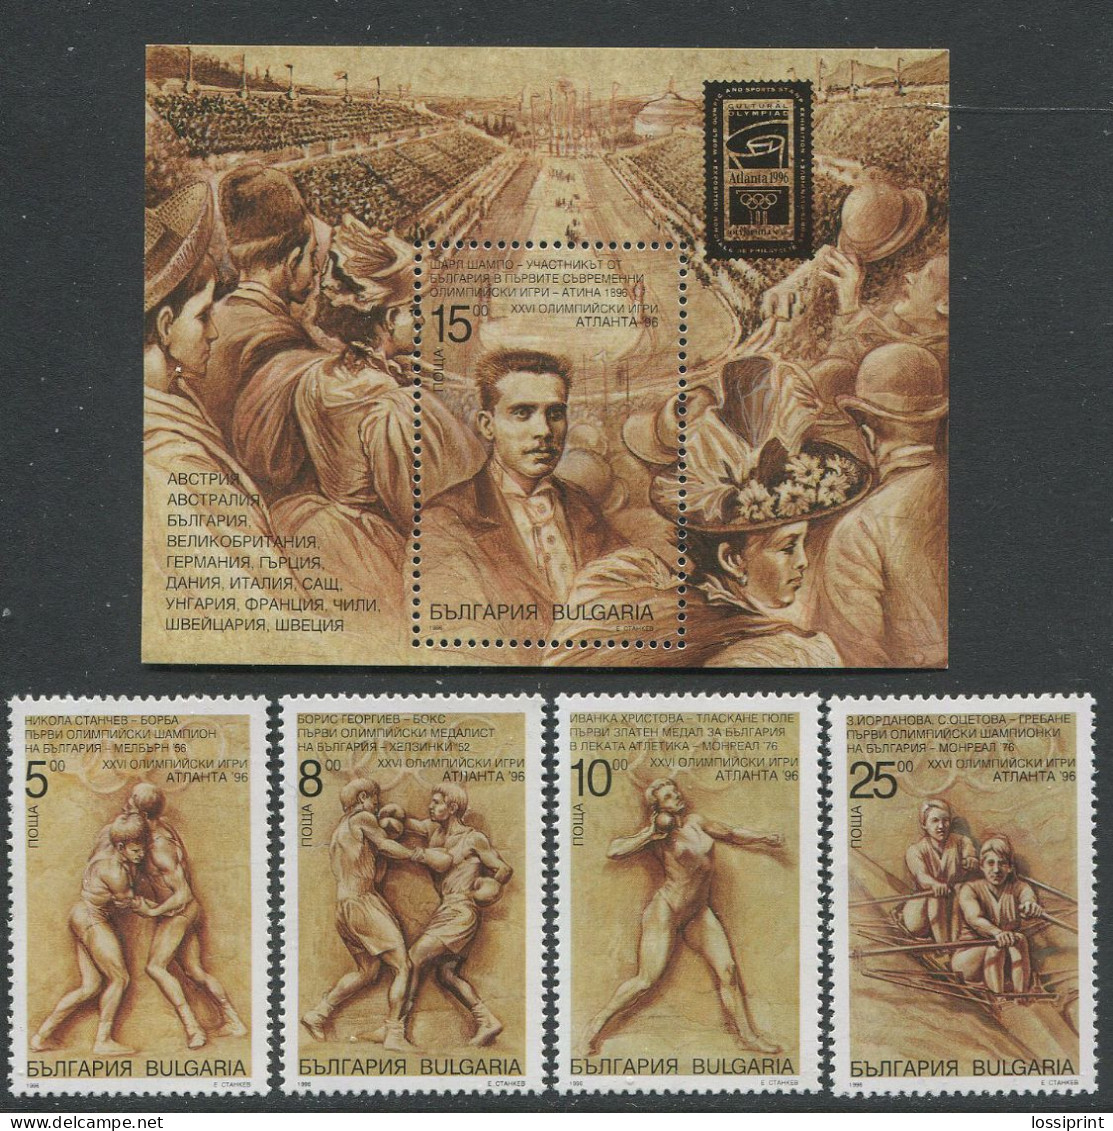 Bulgaria:Unused Stamps Serie XXVI Olympic Games In Atlanta 1996, MNH - Sommer 1996: Atlanta